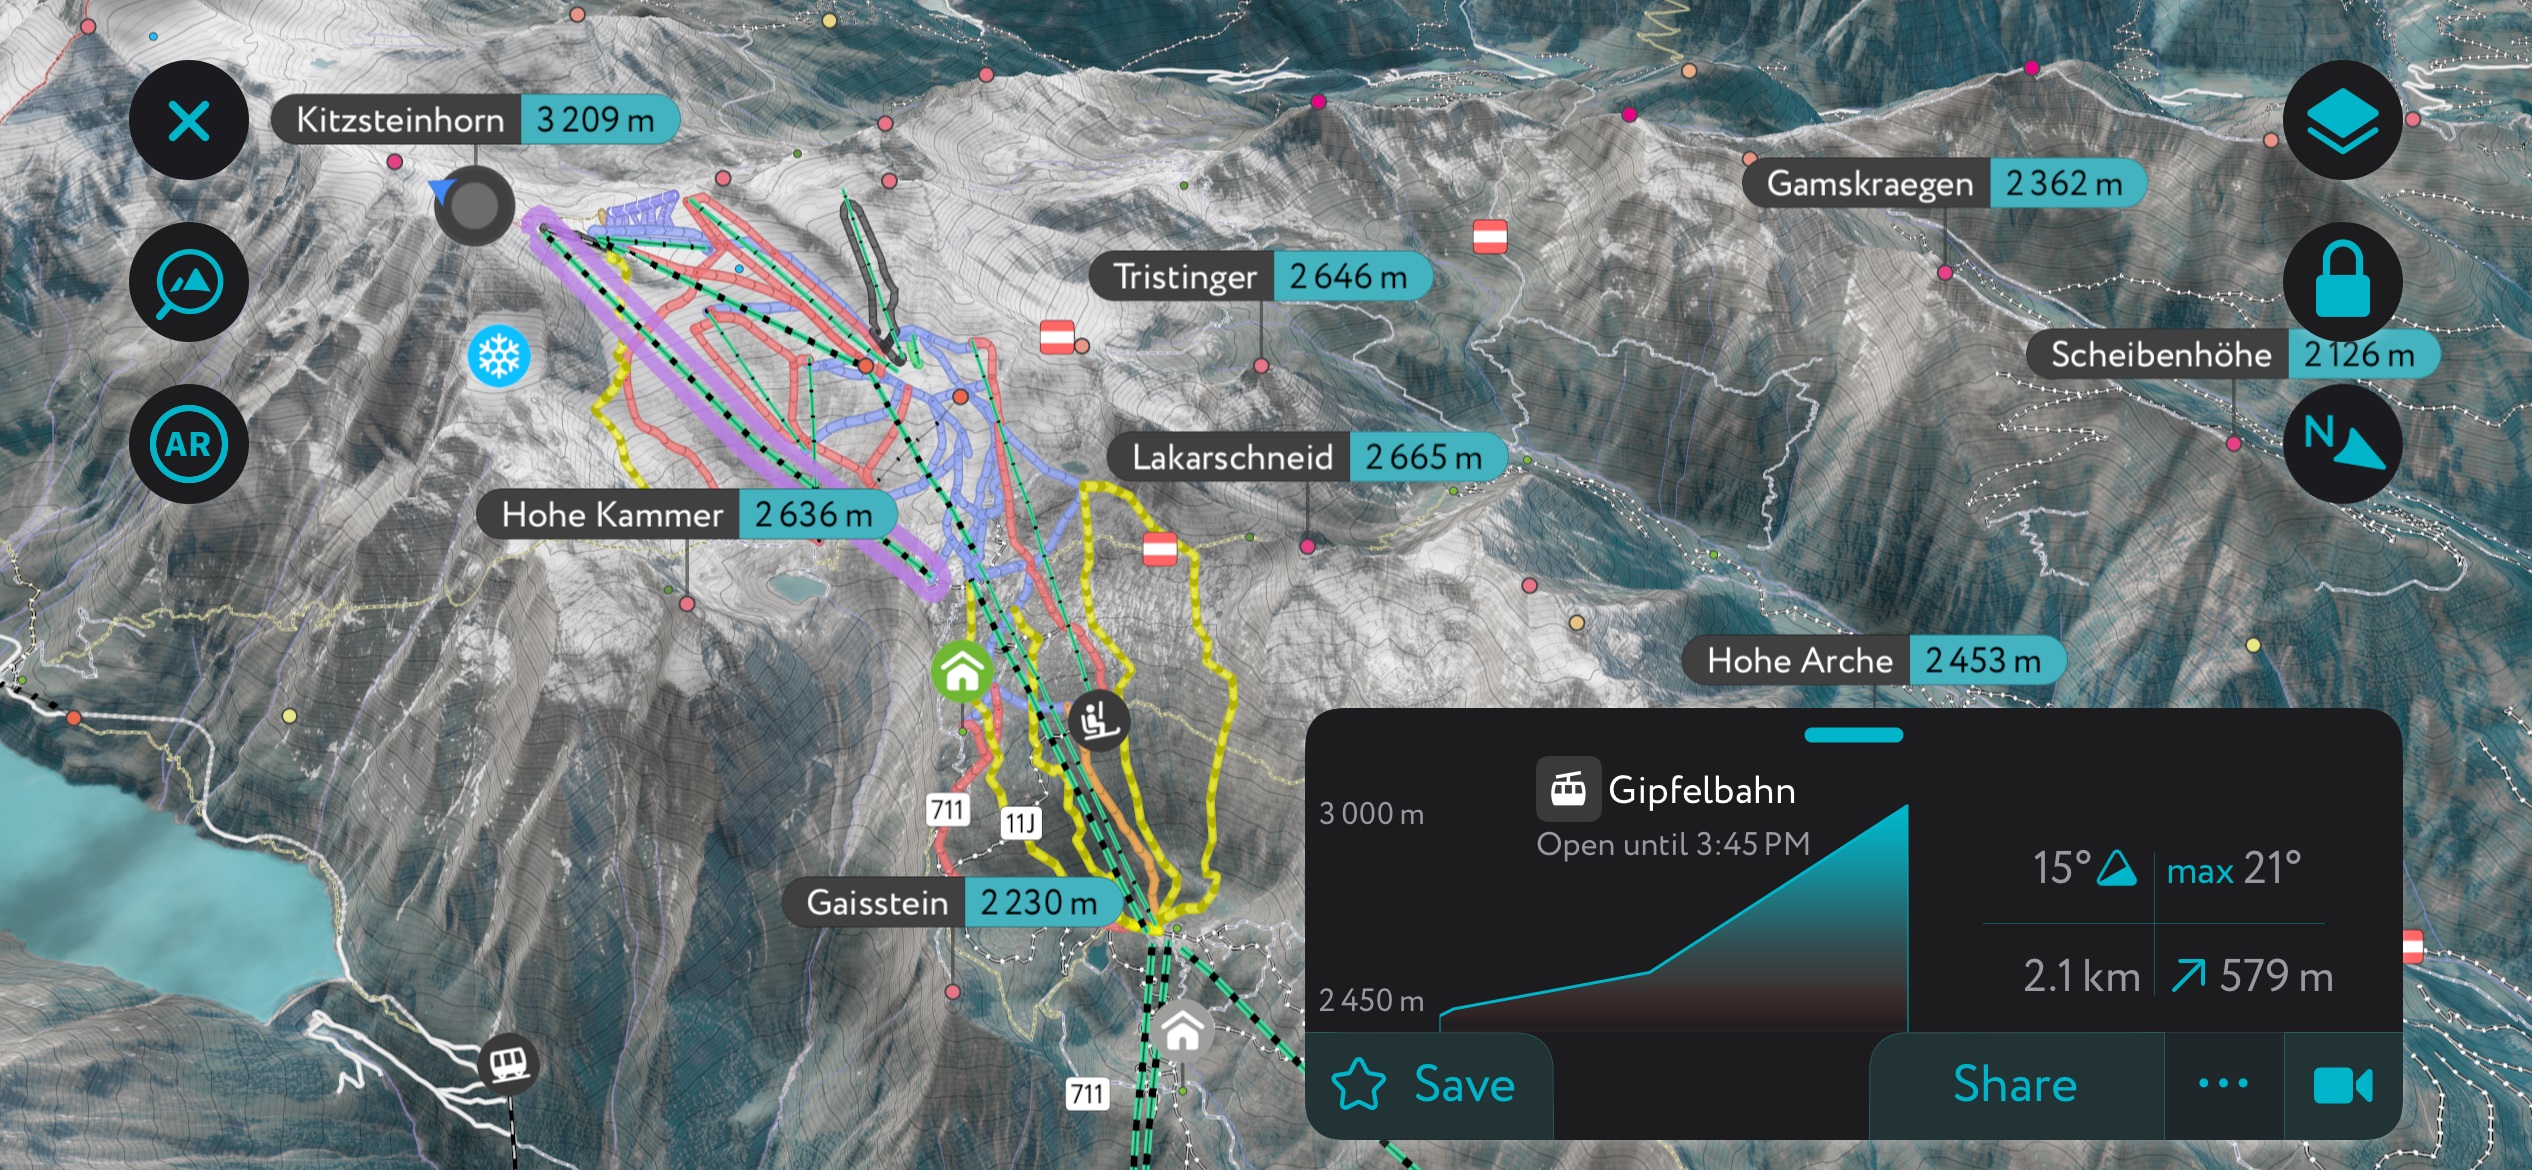 The Kitzsteinhorn Ski Resort on PeakVisor’s mobile app. Glockner Group